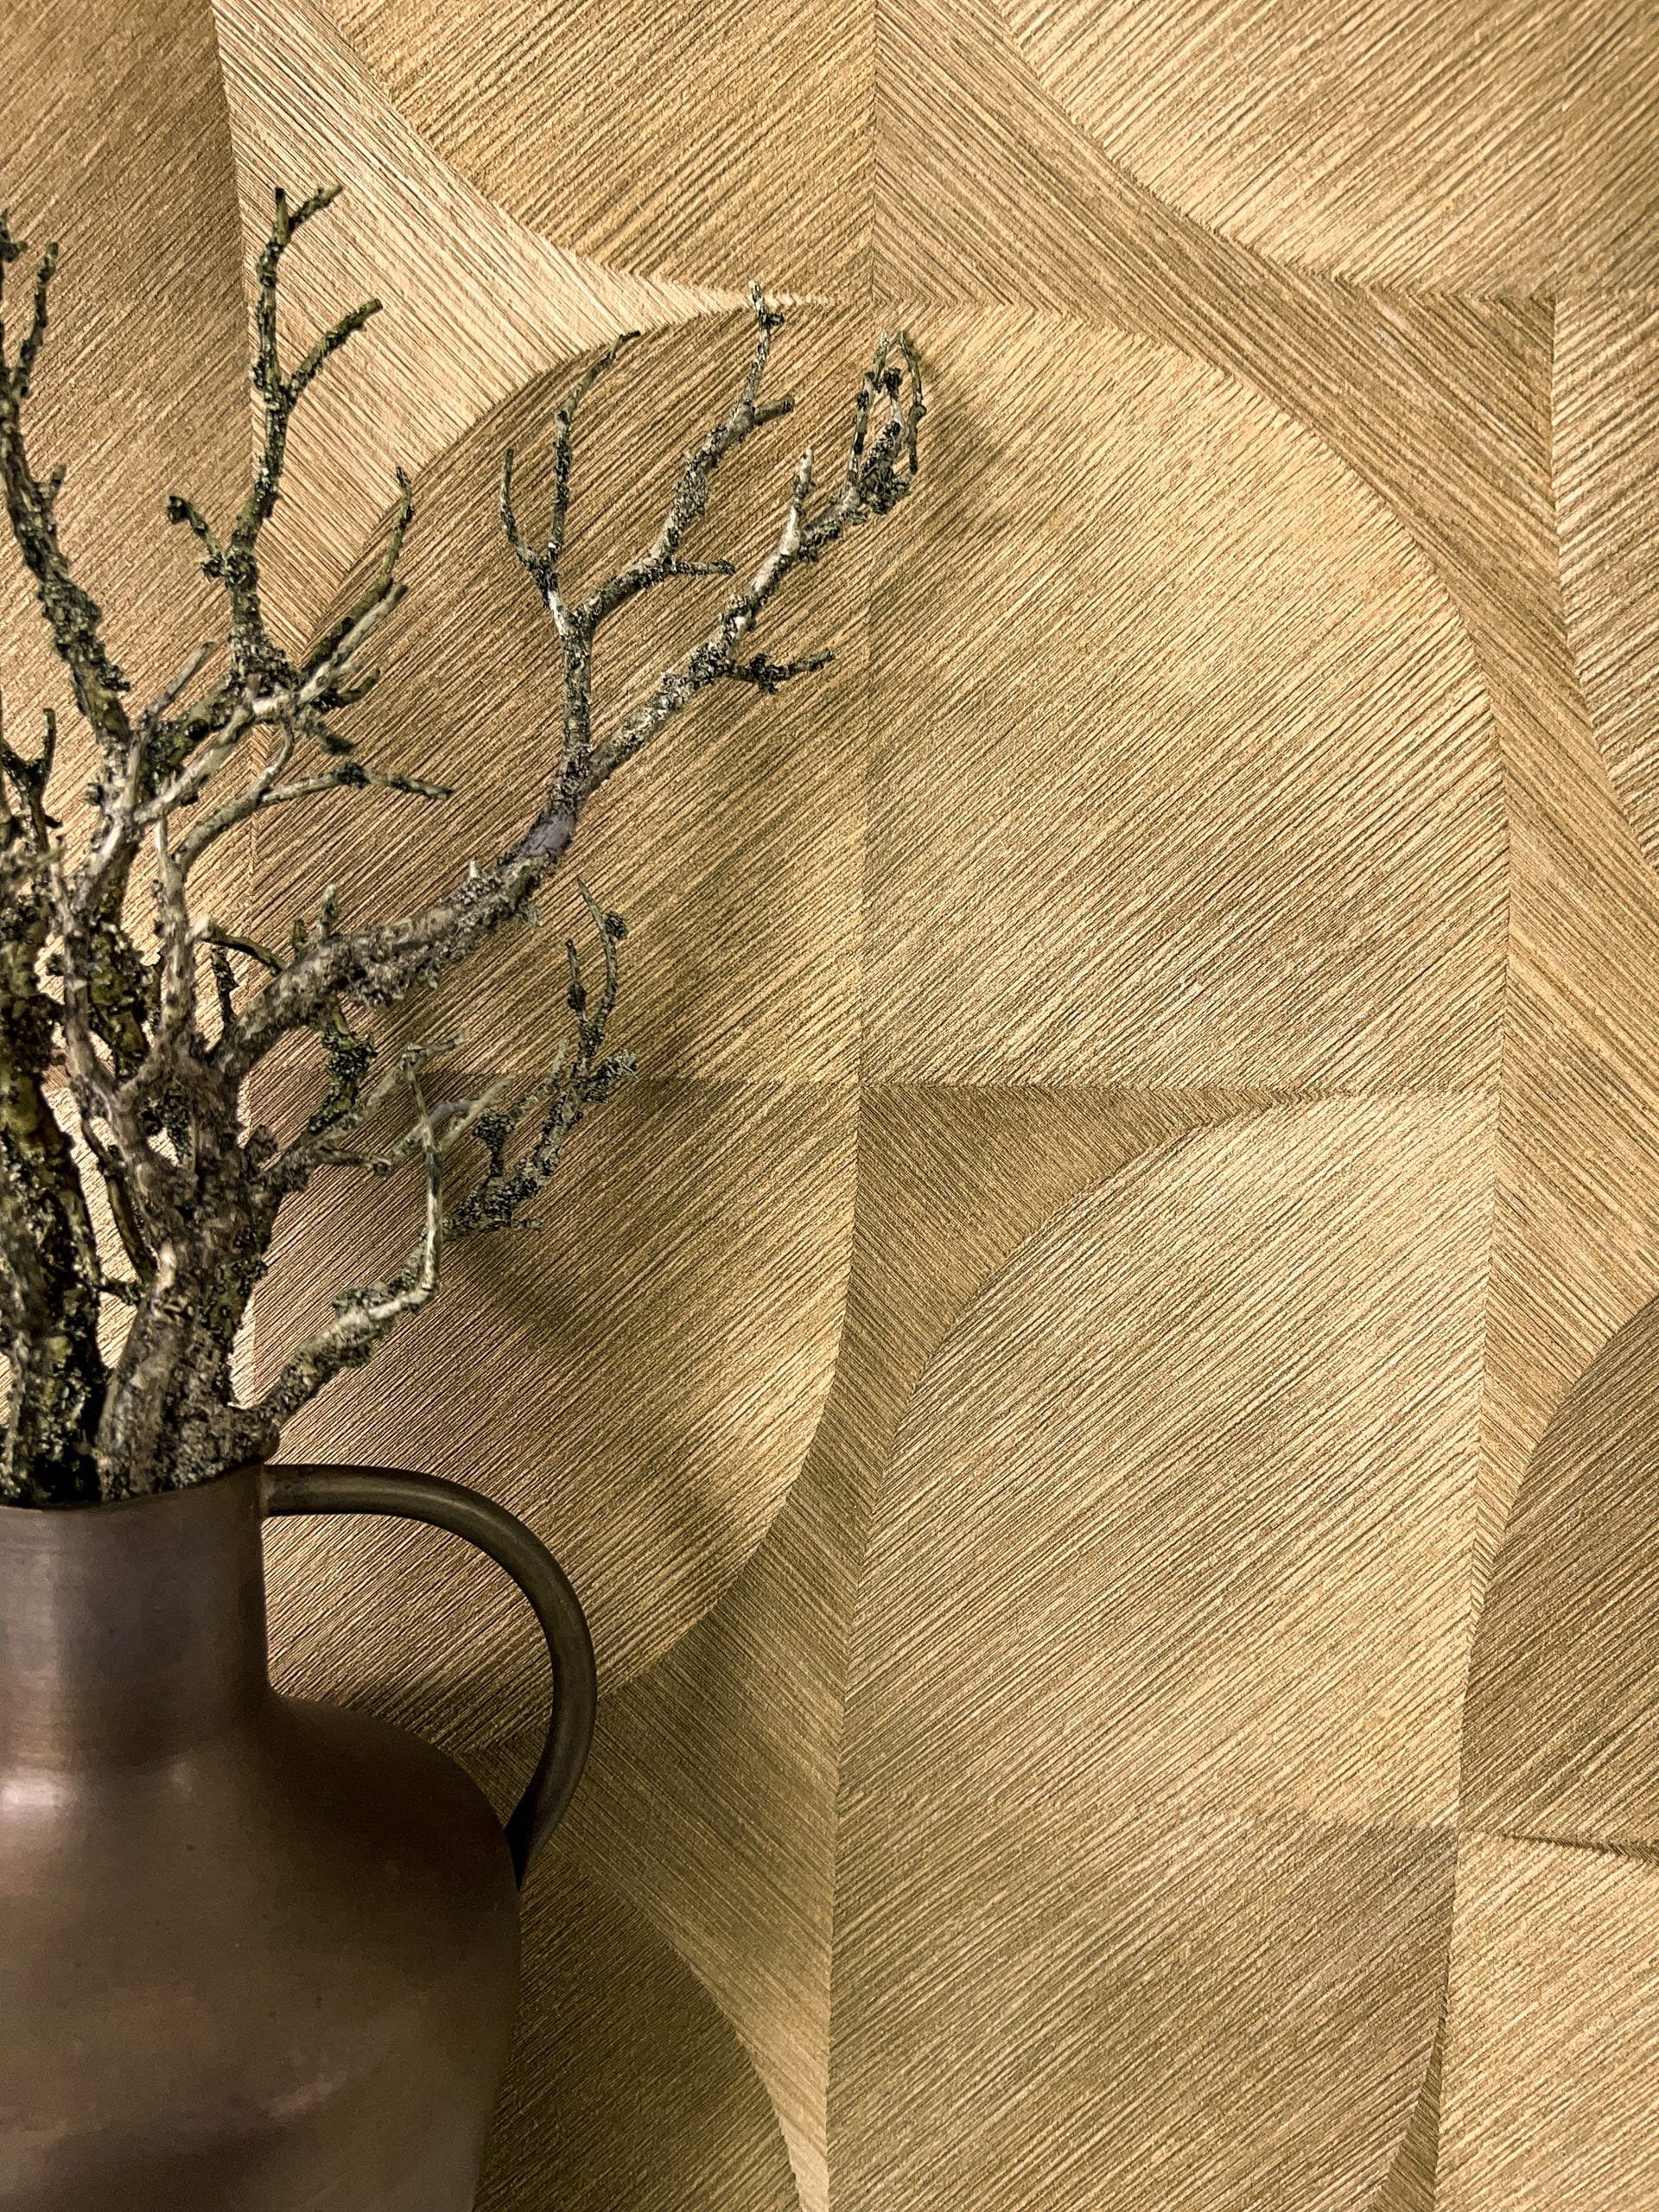 Newroom Vliestapete, Gold Tapete Modern Muster - Mustertapete Retro Hellbraun Braun Geometrisch Grafisch Linien Verlauf für Wohnzimmer Schlafzimmer Küche